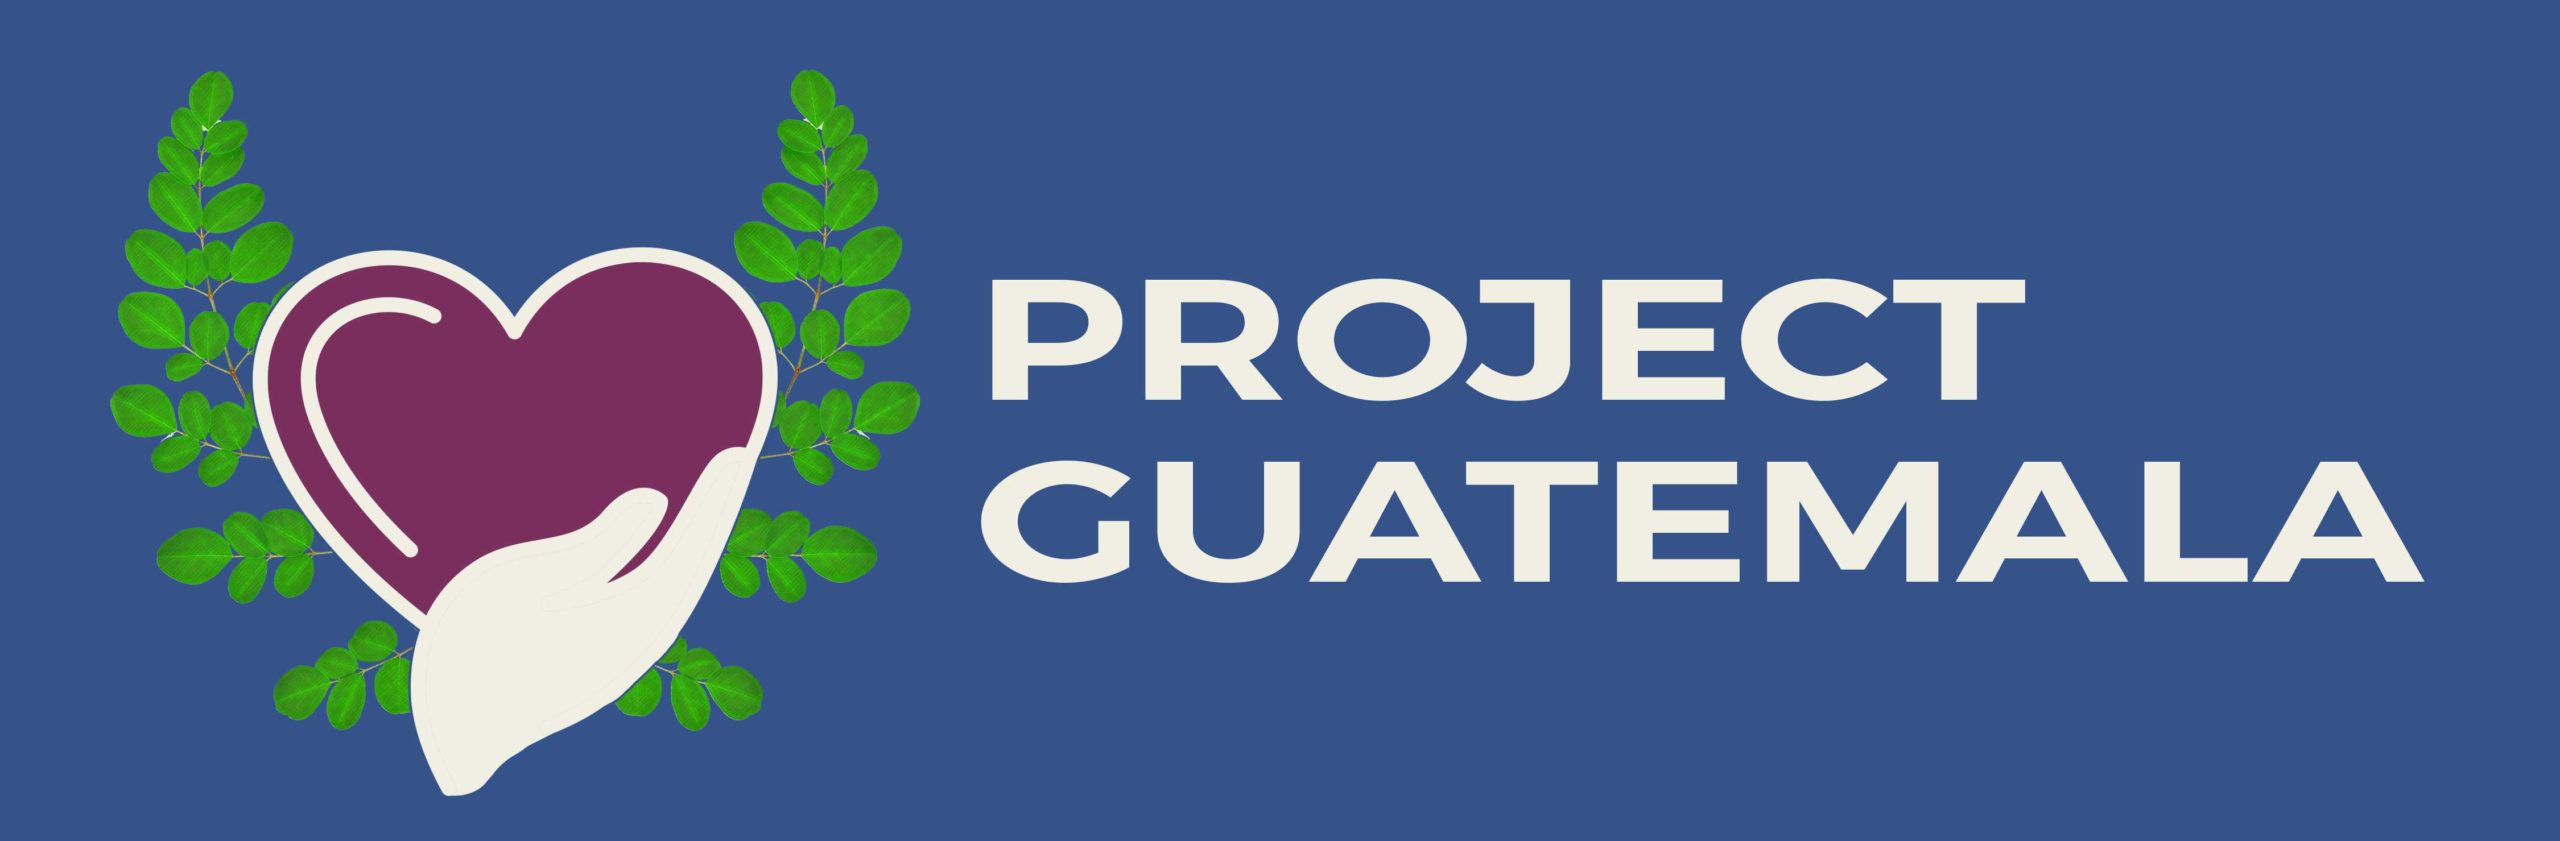 Project Guatemala Logo